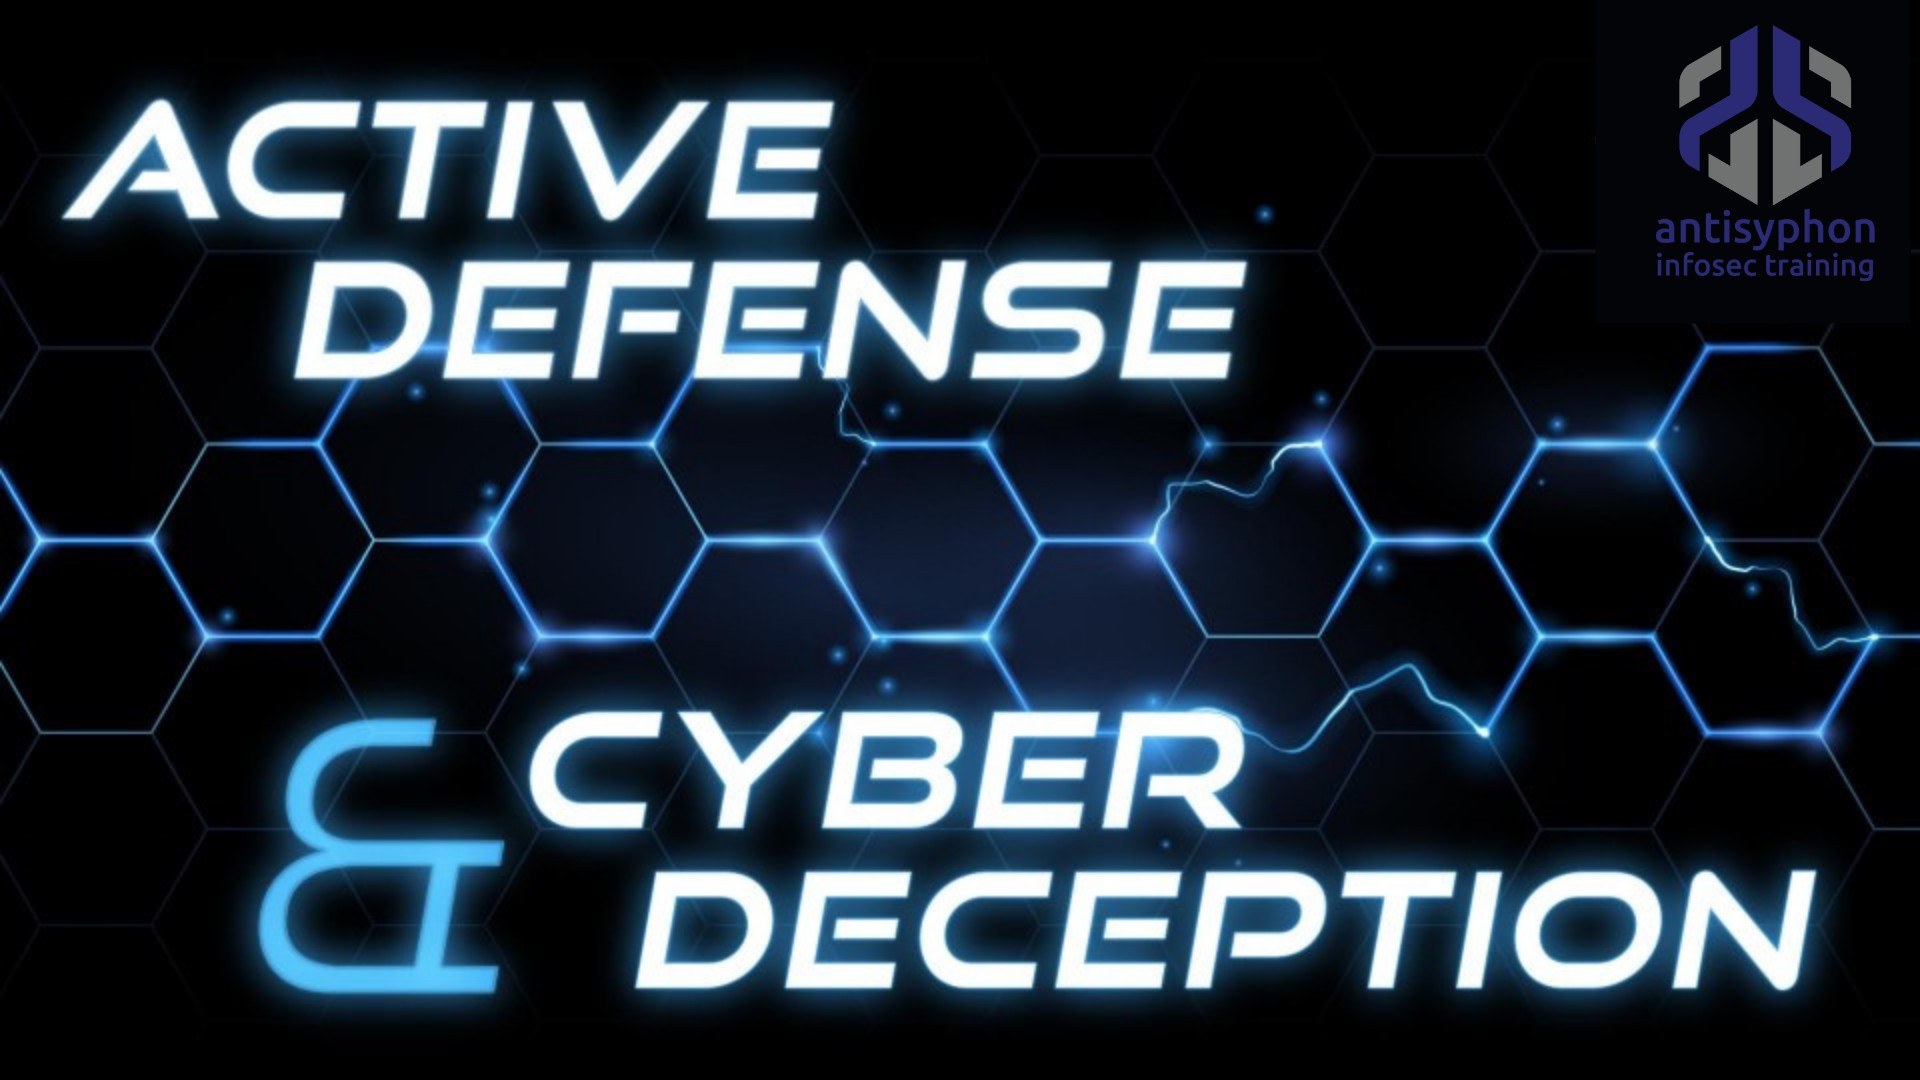 Active Defense & Cyber Deception